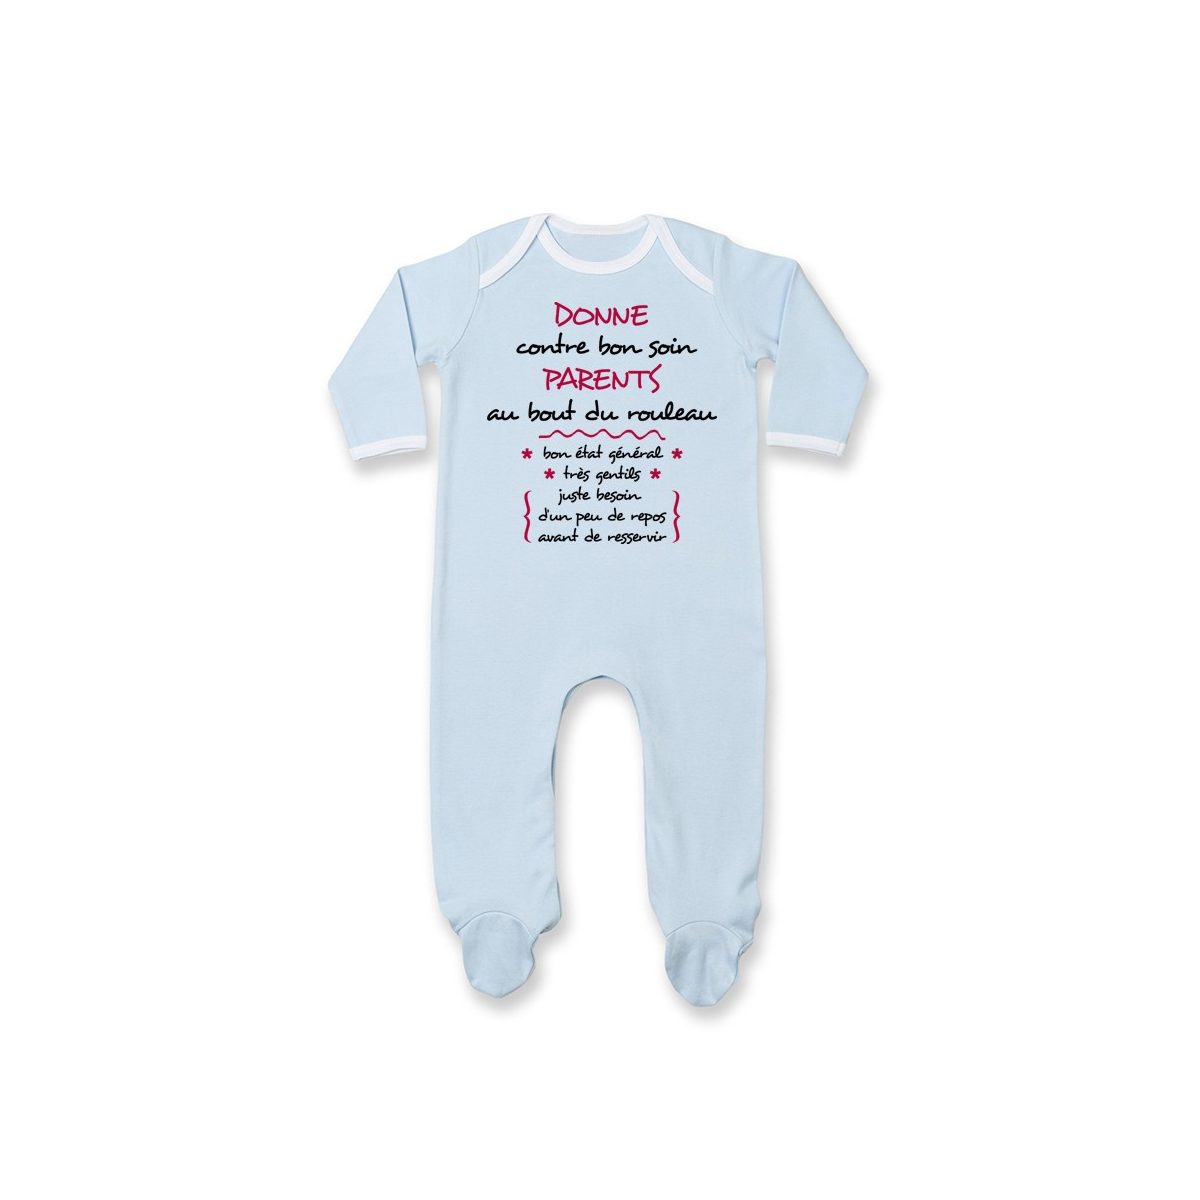 Pyjama bébé Donne parents contre bon soin